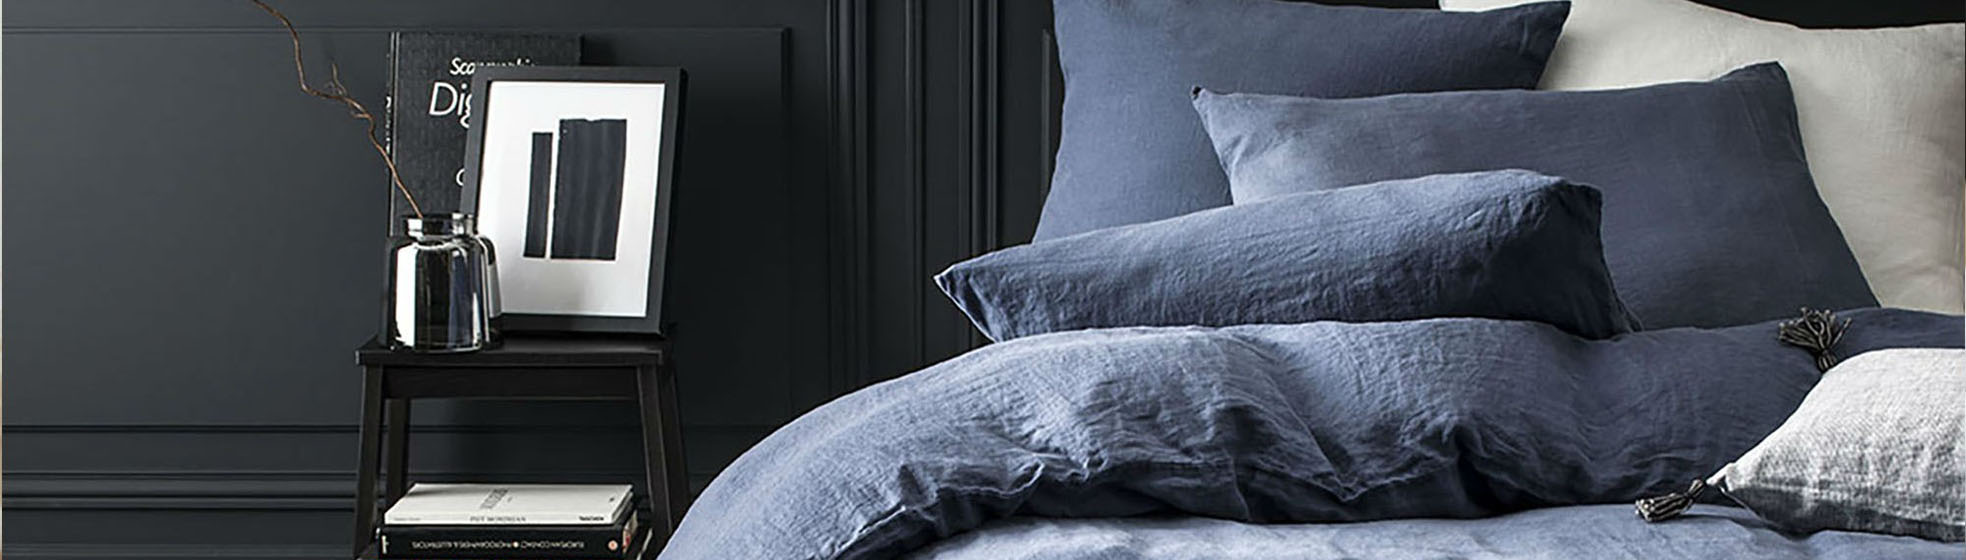 Taie oreiller linge de lit de qualité